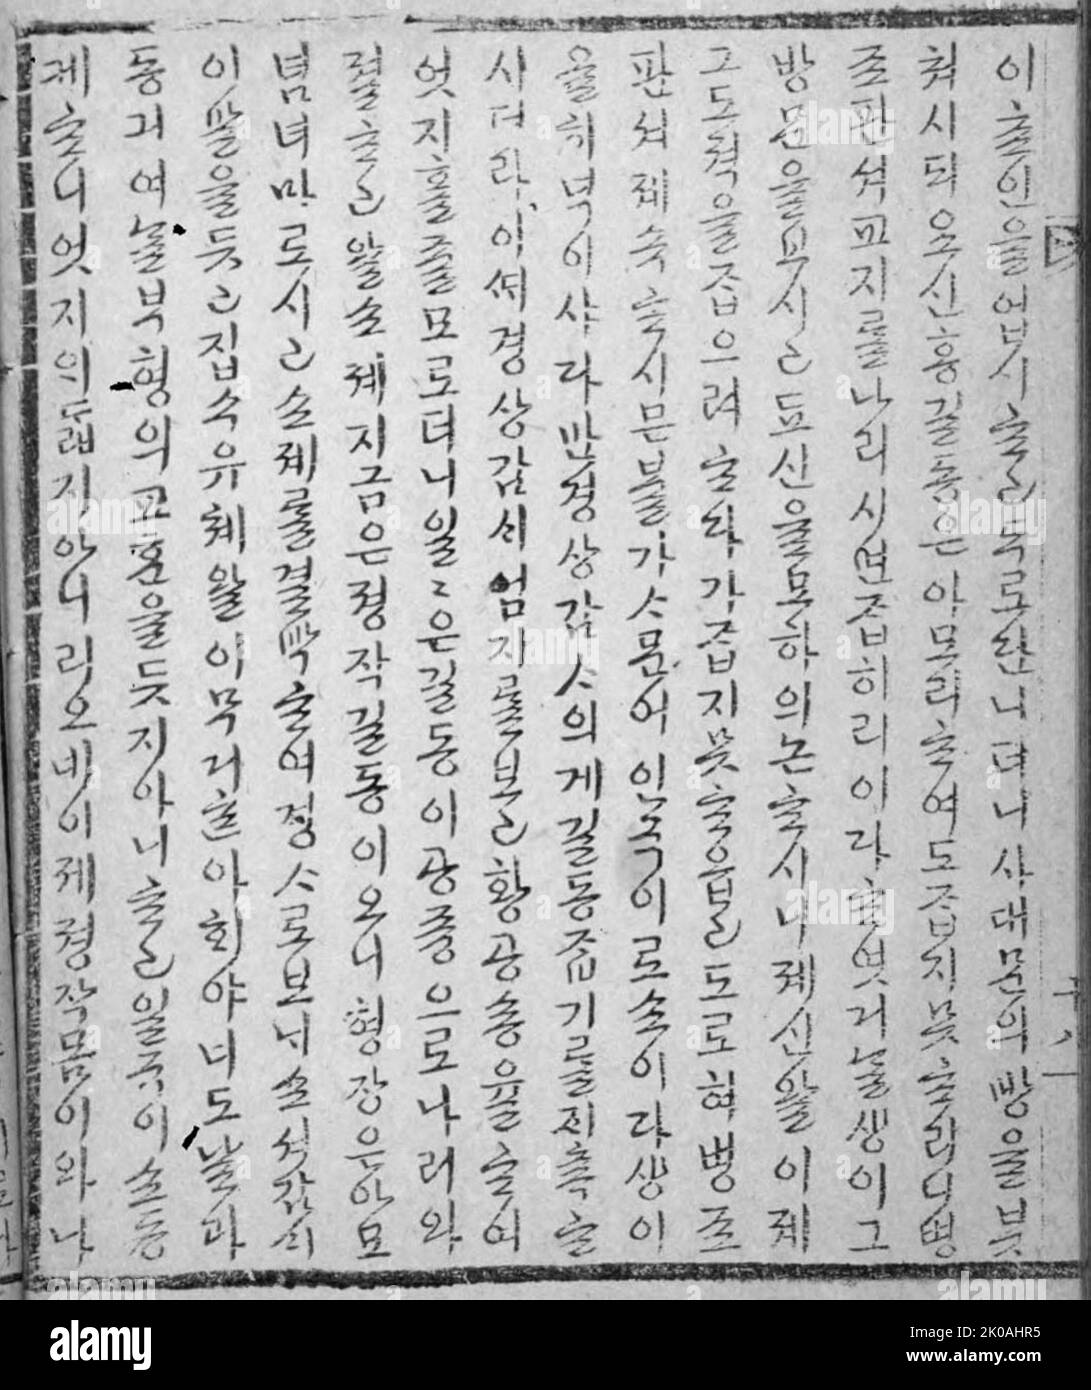 Die Geschichte von Hong Gildong ist einer der ersten Romane, die in Hangul, dem koreanischen Alphabet, in der Mitte der Joseon-Dynastie geschrieben wurden. Der Roman ist von Heo Gyun (Ho Kyun, 1569-1618), dessen revolutionäres Denken sich in der Betonung der Geschichte auf die Auflösung von Statusunterschieden und die Reform korrupter Politik widerspiegelt. Die Hauptfigur des Romans, Hong Gildong, war das Kind eines Adligen und einer Dienerin. Obwohl er sehr intelligent und talentiert war, wurde Hong Gildong aufgrund eines rigiden Statussystems nie als Sohn einer adligen Familie akzeptiert. Nachdem er sein Haus verlassen hatte, wurde Hong Gildong ein Bandit Stockfoto